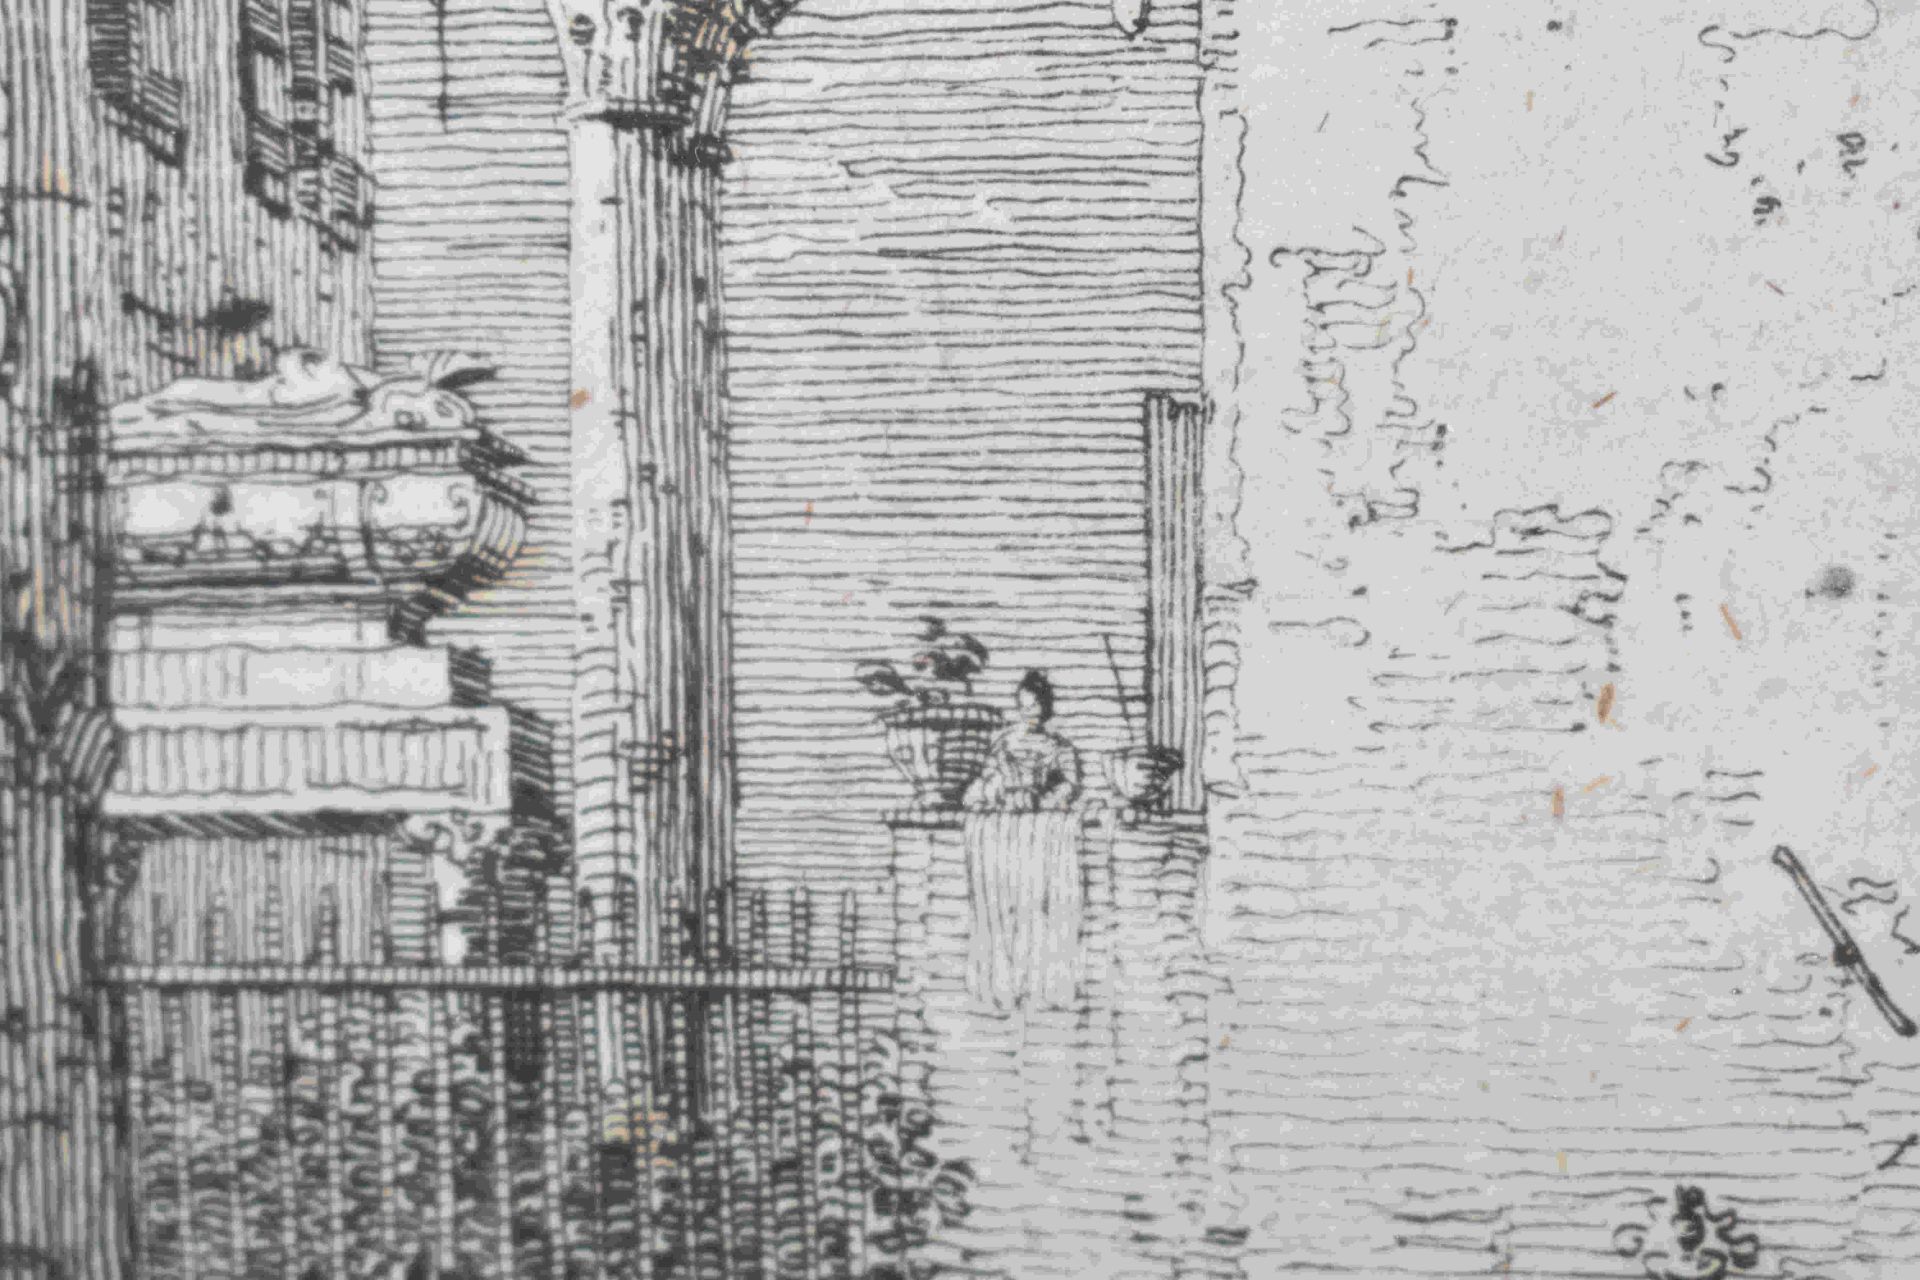 Canal, Giovanni Antonio, gen. Canaletto: Il portico con la lanterna - Image 17 of 24